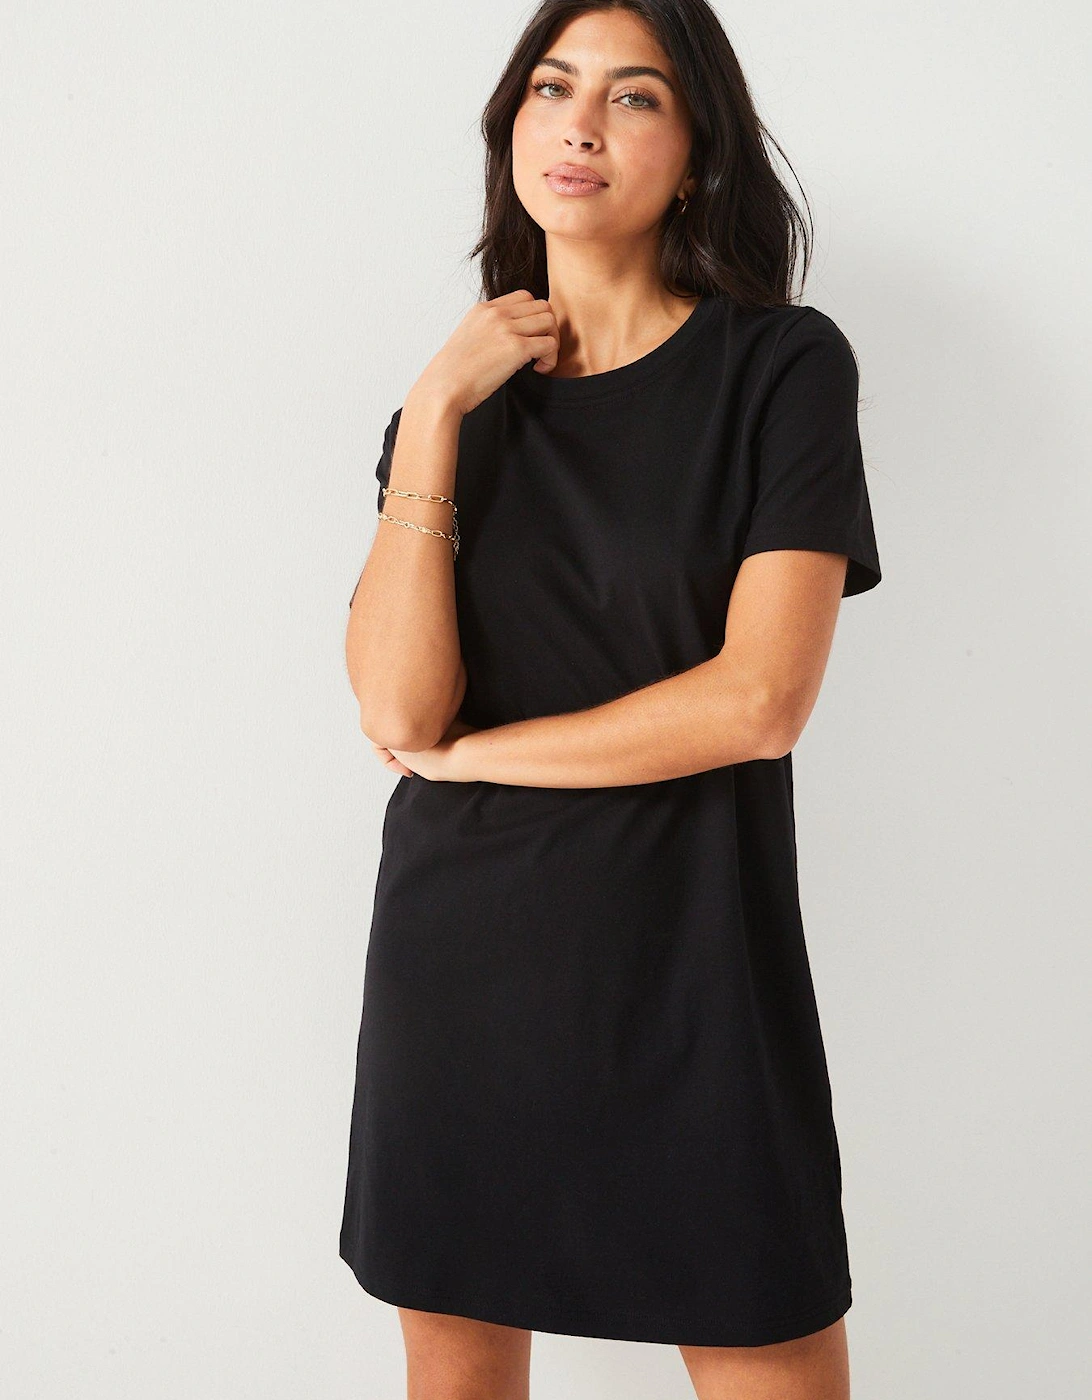 The Essential Tshirt Dress - Black, 7 of 6